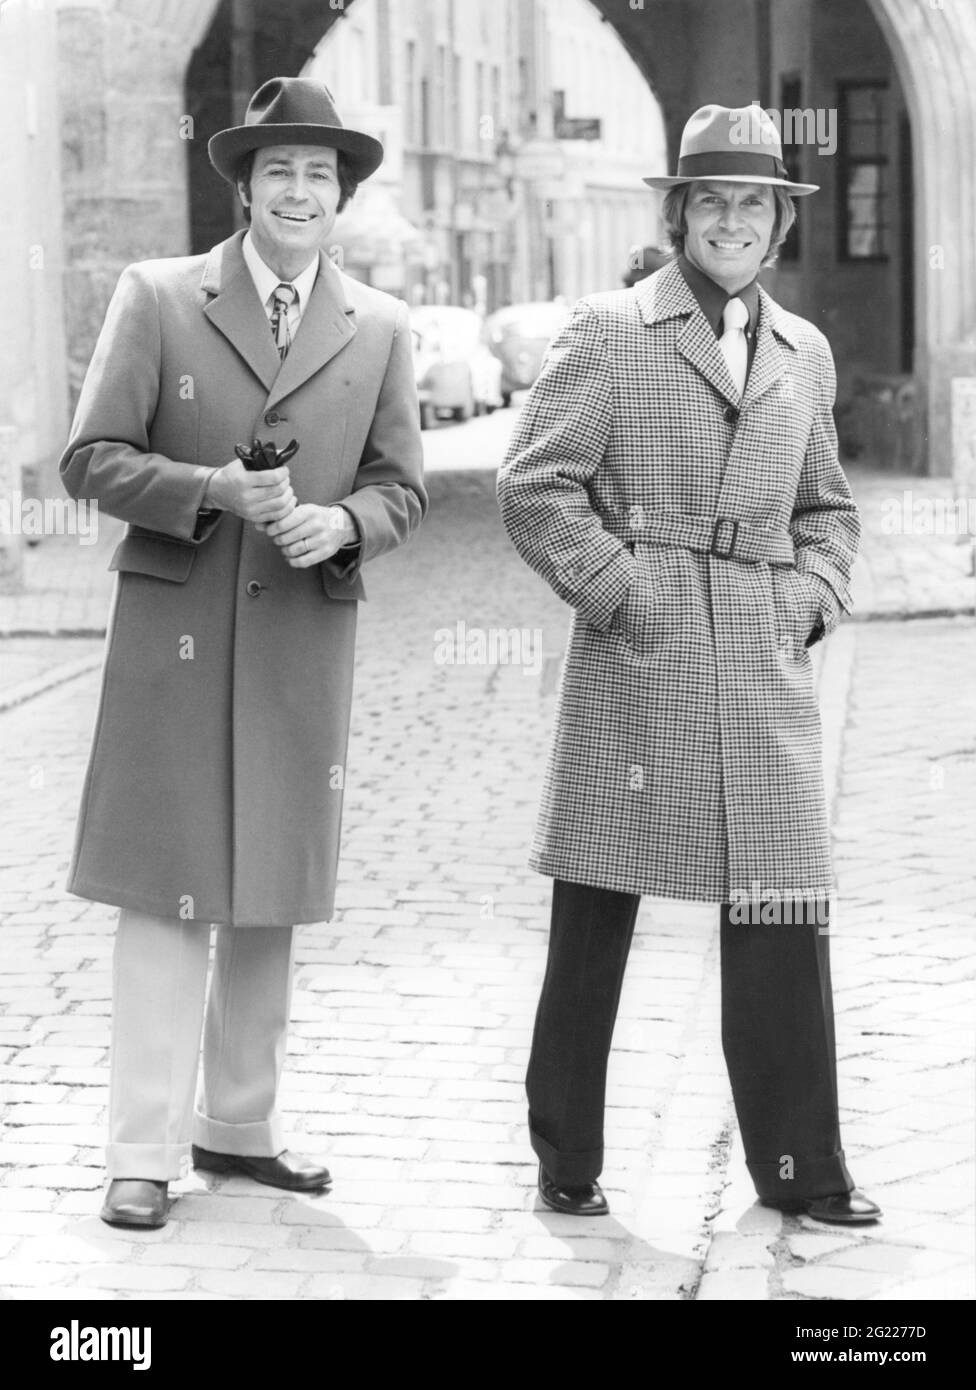 Mode, 70er Jahre, Mäntel, zwei Männer mit Mänteln und Trilbys, ZUSÄTZLICHE-RIGHTS-CLEARANCE-INFO-NOT-AVAILABLE Stockfoto